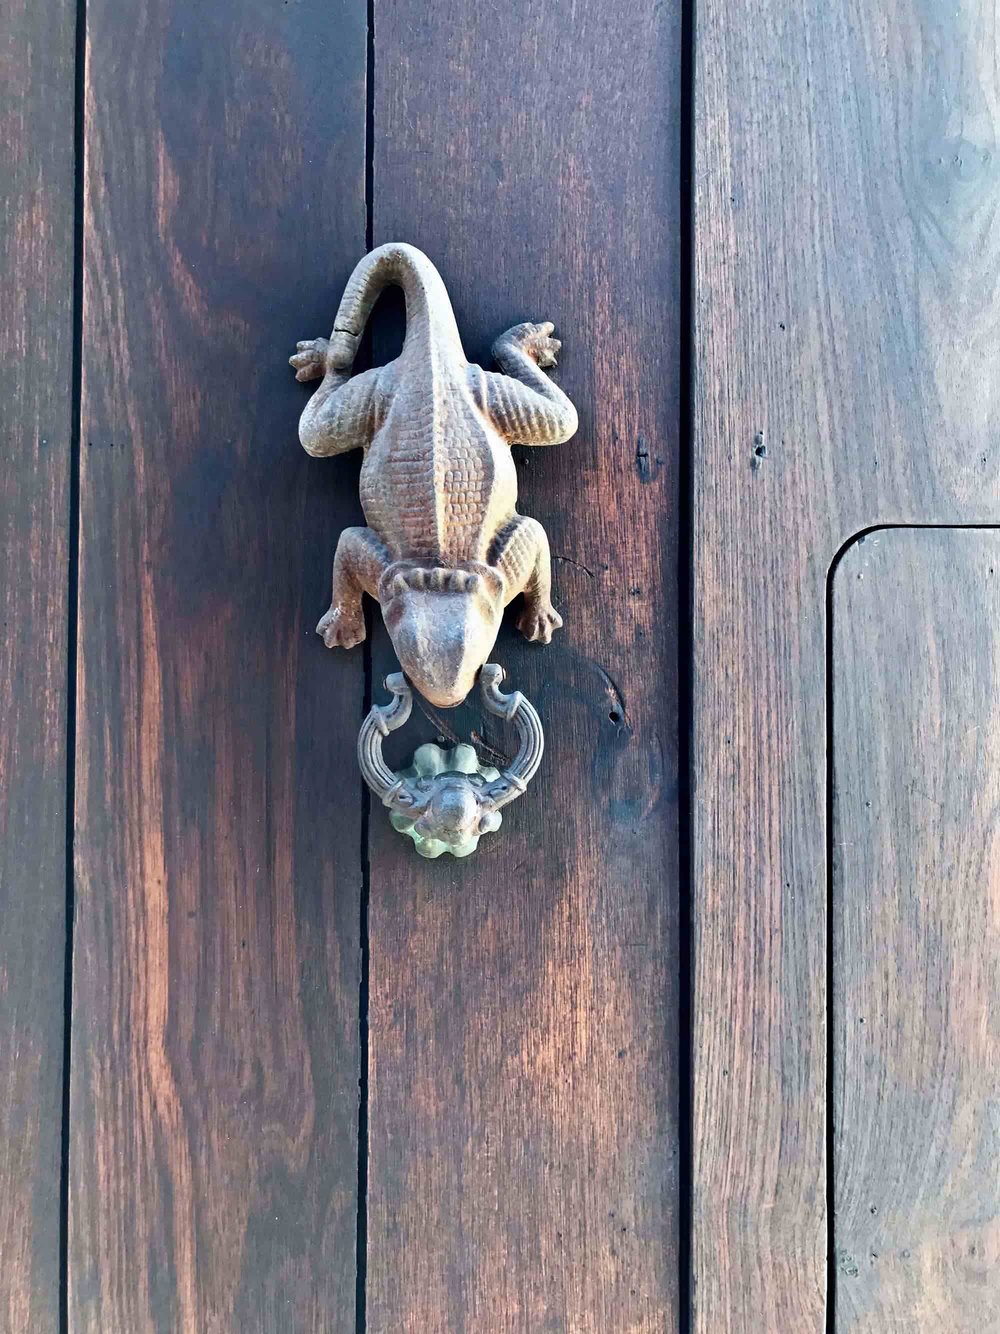 Iguana door knocker | Doors and Door Knockers of Cartagena, Colombia | pictures of Cartagena, Colombia